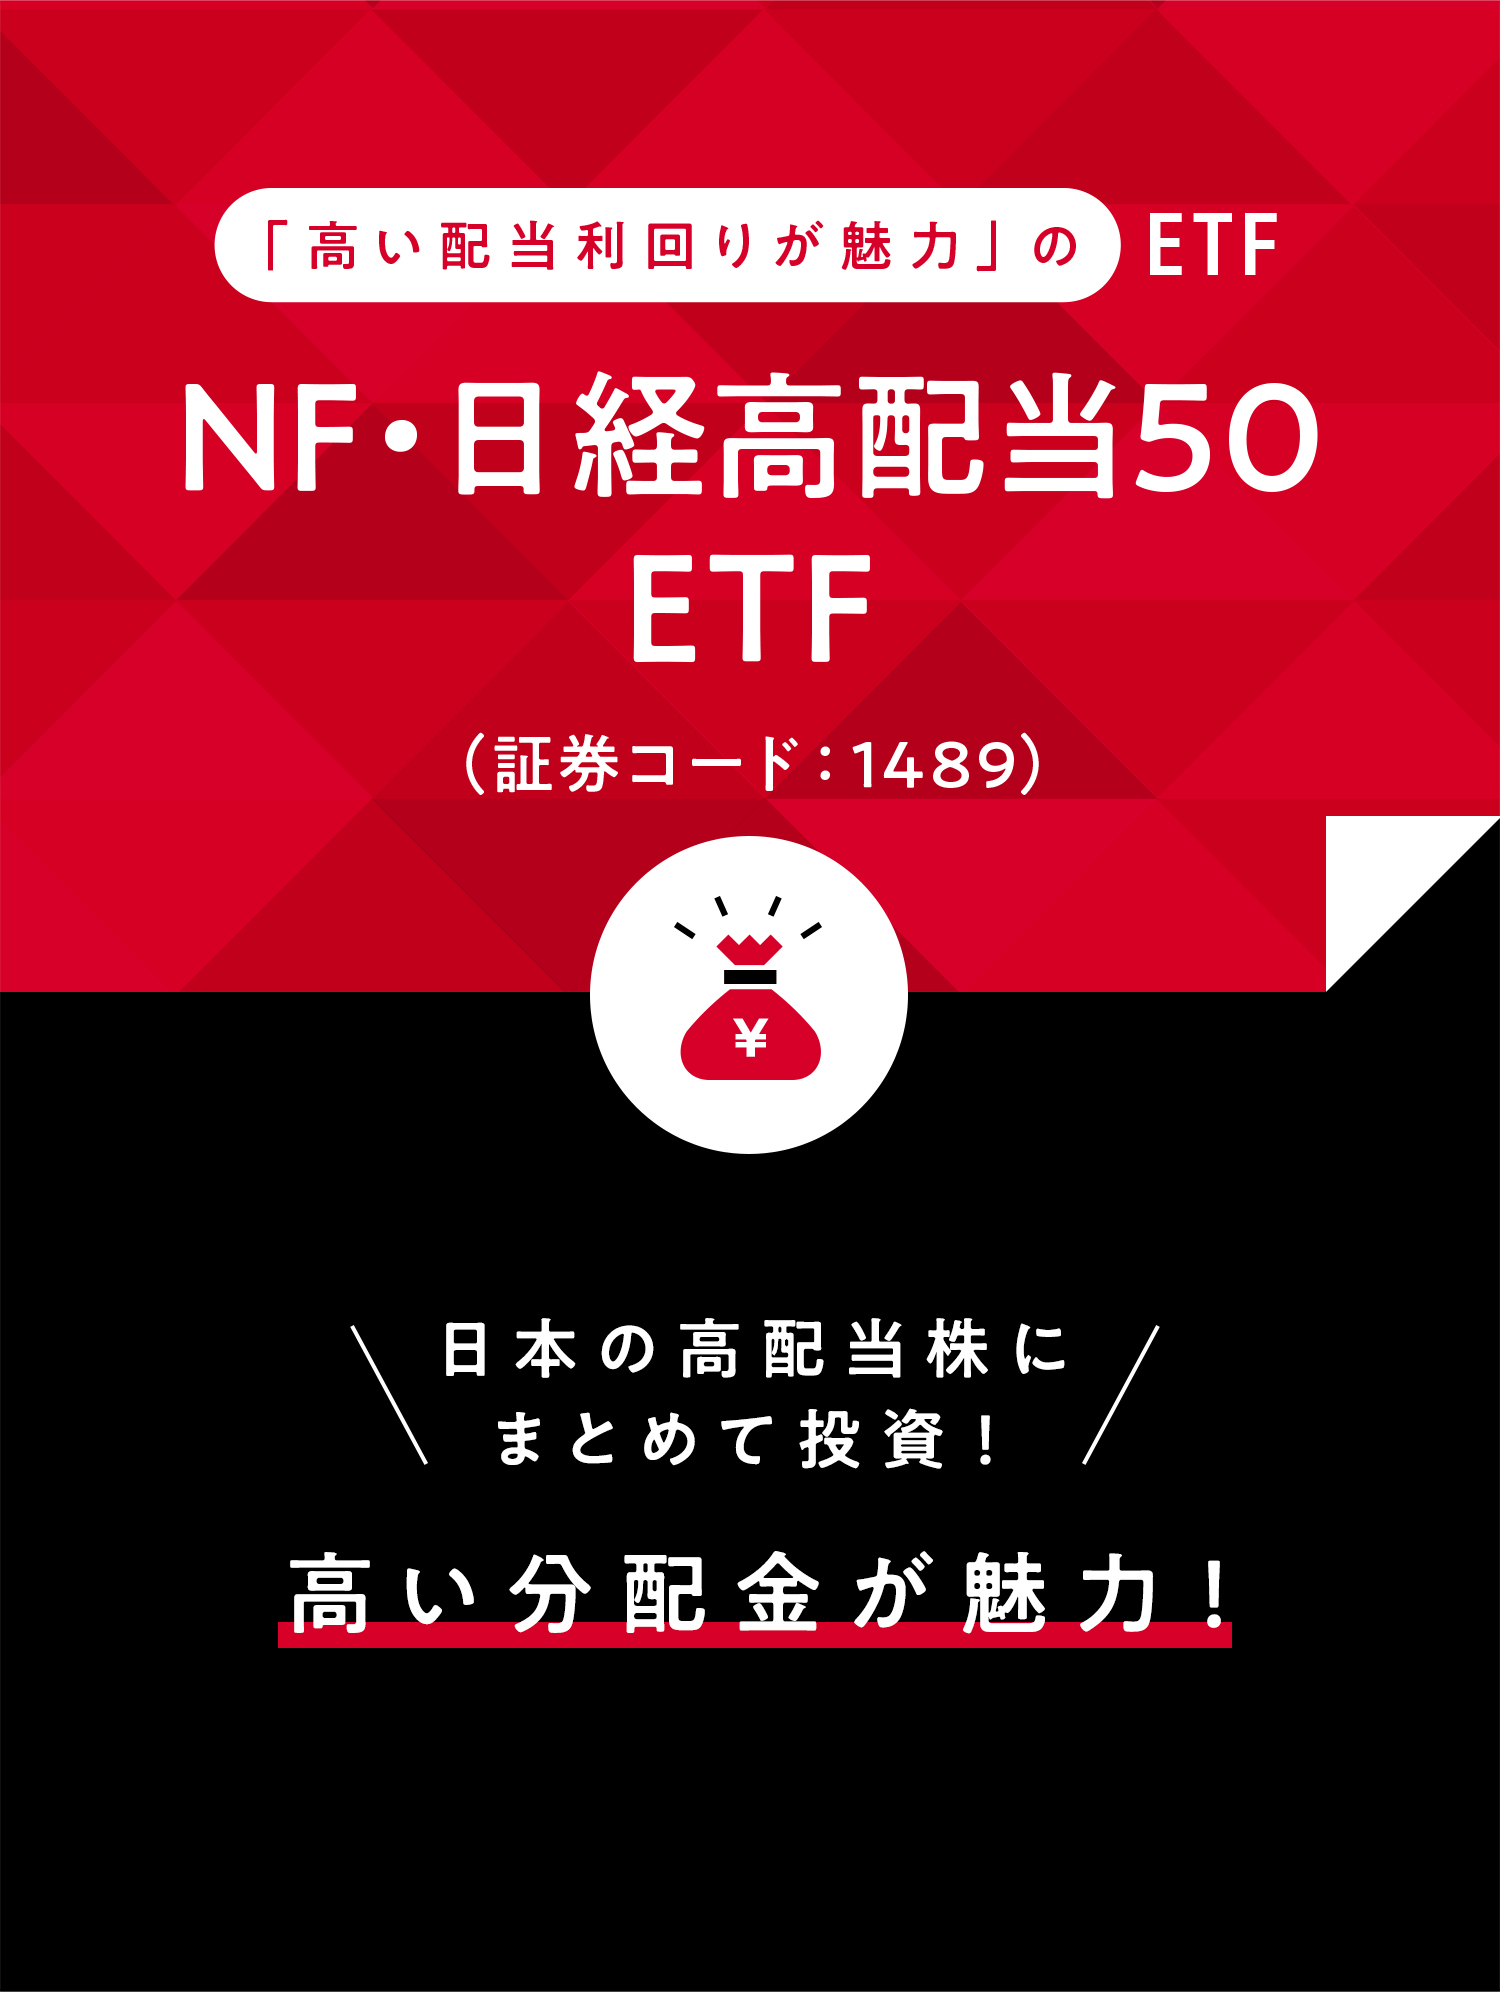 「高い配当利回りが魅力」のETF NF・日経高配当 50 ETF (証券コード：1489) 日本の高配当株にまとめて投資！ 高い分配金が魅力！